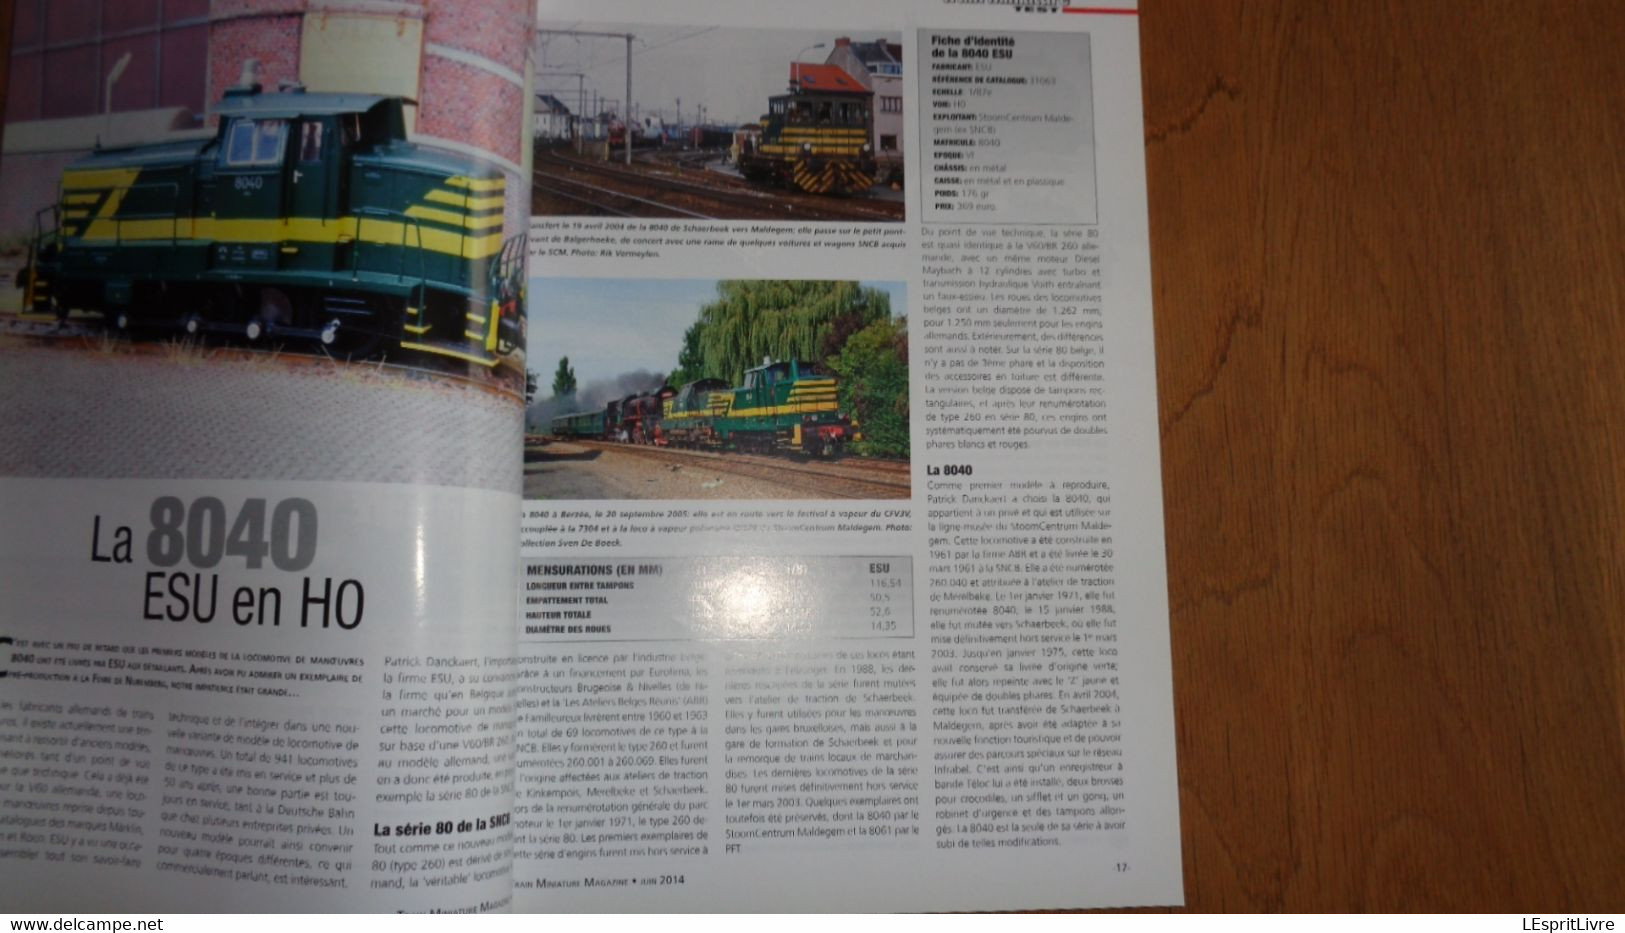 TRAIN MINIATURE N° 137 Chemins De Fer Rail Revue Modélisme Maquettisme SNCB NMBS Réseau 8040 ESU Traxx 2835 Série 62 - Modelismo